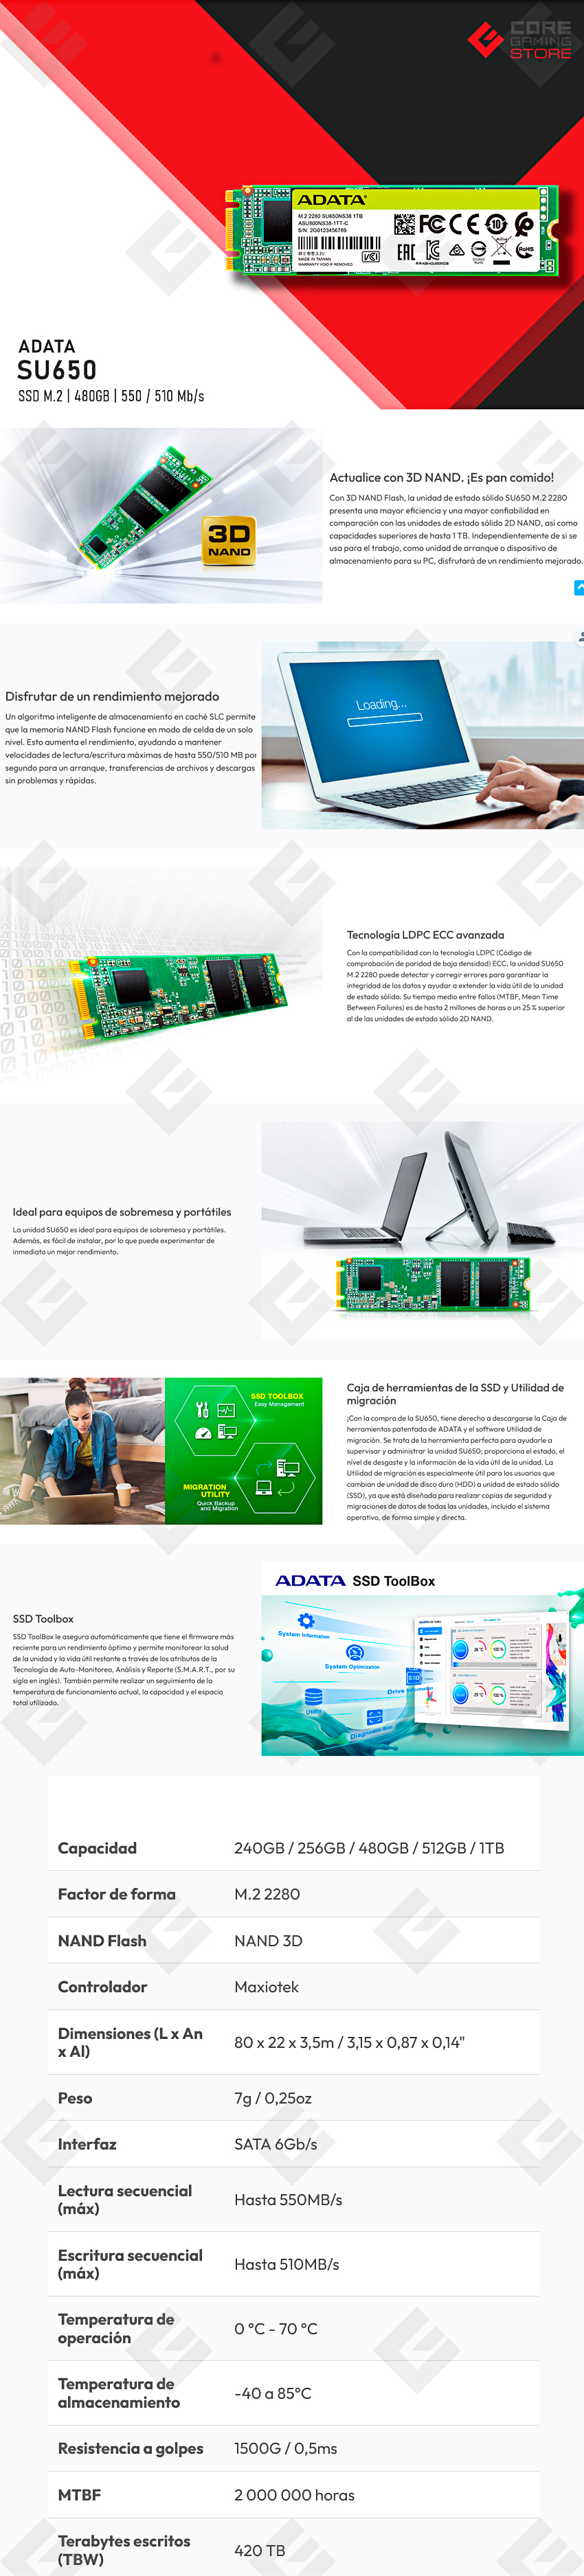 Unidad de Estado Solido SSD M.2 SATA ADATA SU650, 480GB, 550 / 510MB/s - ASU650NS38-480GT-C